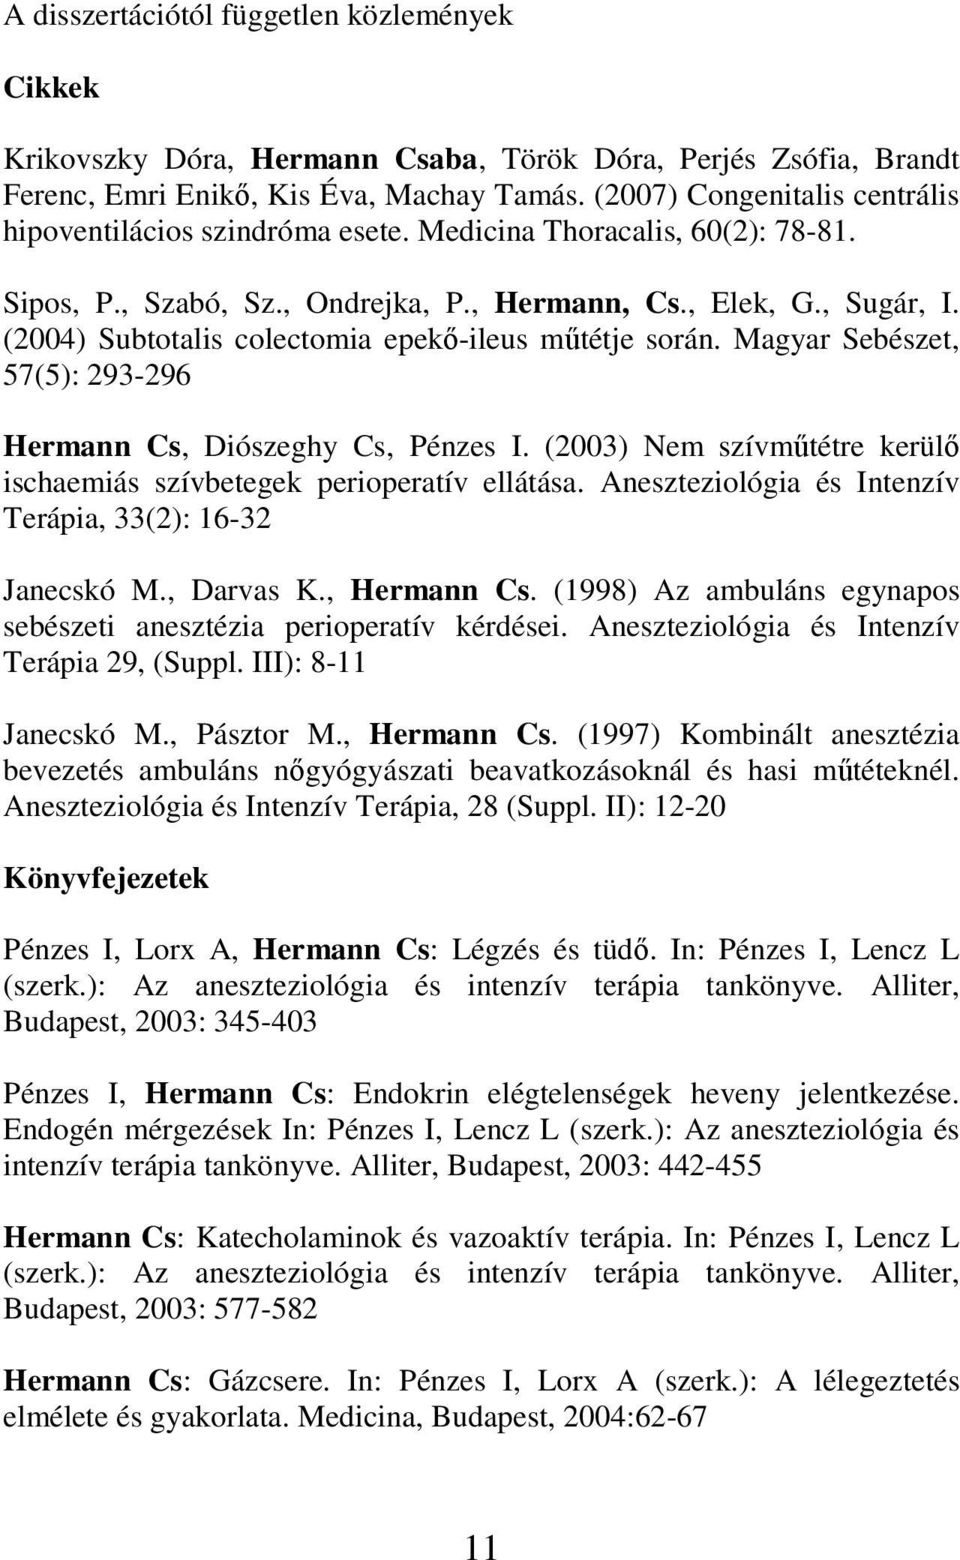 (2004) Subtotalis colectomia epekı-ileus mőtétje során. Magyar Sebészet, 57(5): 293-296 Hermann Cs, Diószeghy Cs, Pénzes I. (2003) Nem szívmőtétre kerülı ischaemiás szívbetegek perioperatív ellátása.